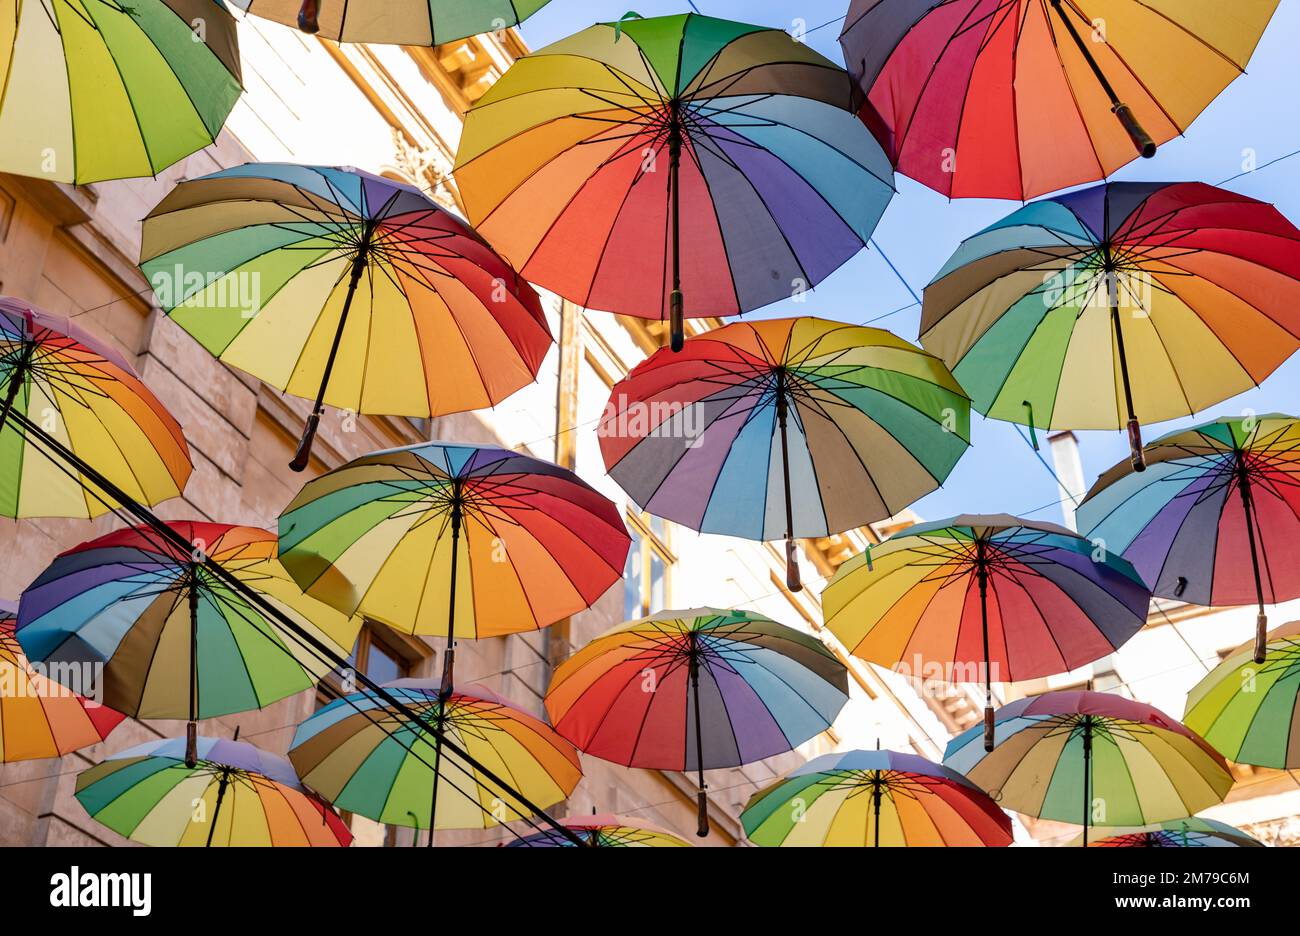 Ein Bild der bunten Regenschirme in der Schirmstraße in Bukarest. Stockfoto